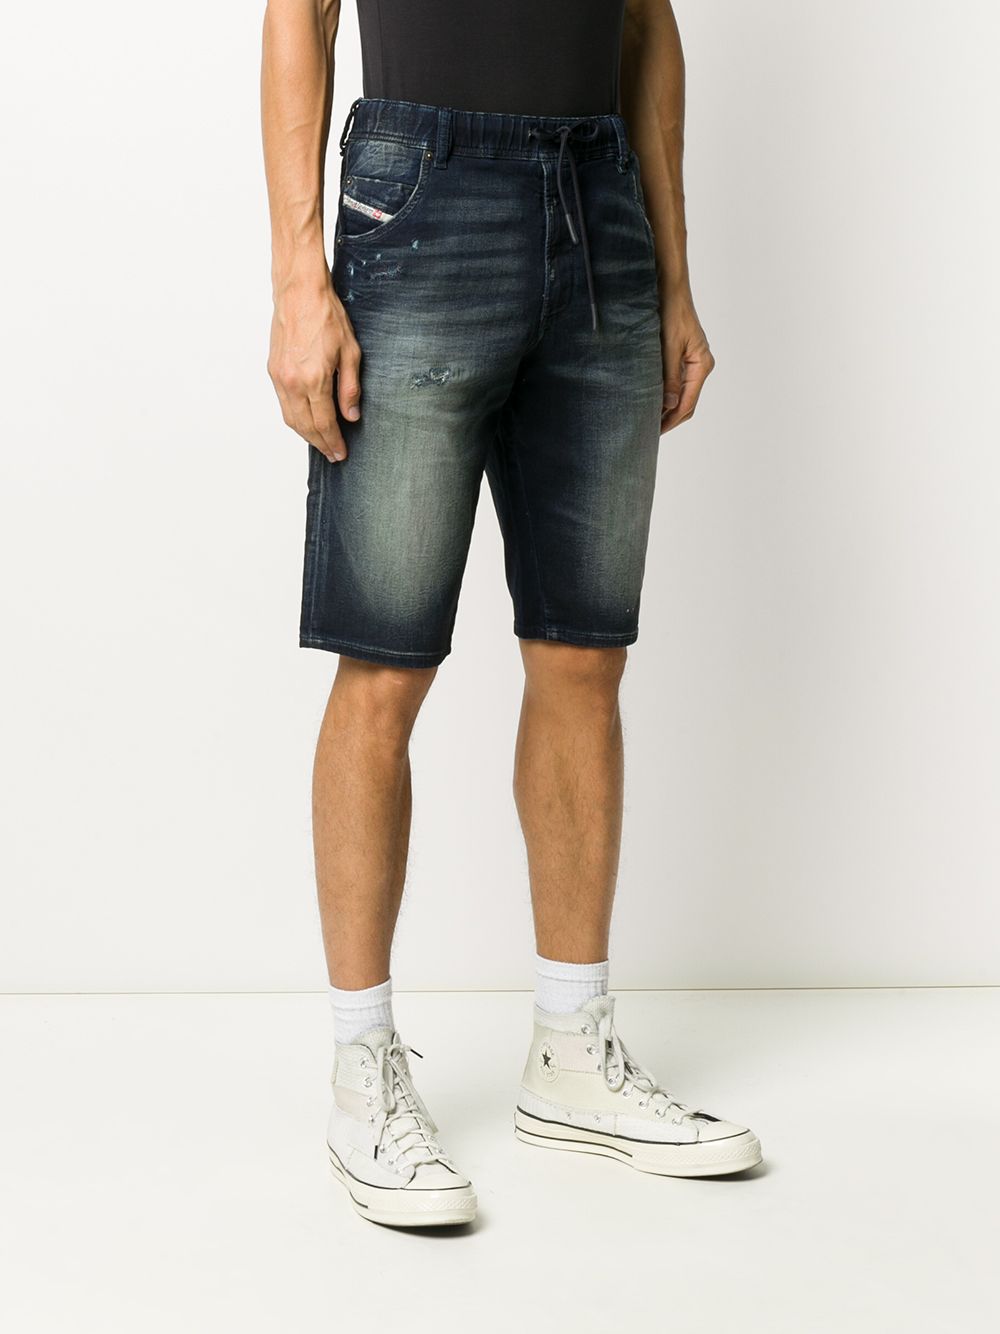 фото Diesel джинсовые шорты с эффектом потертости